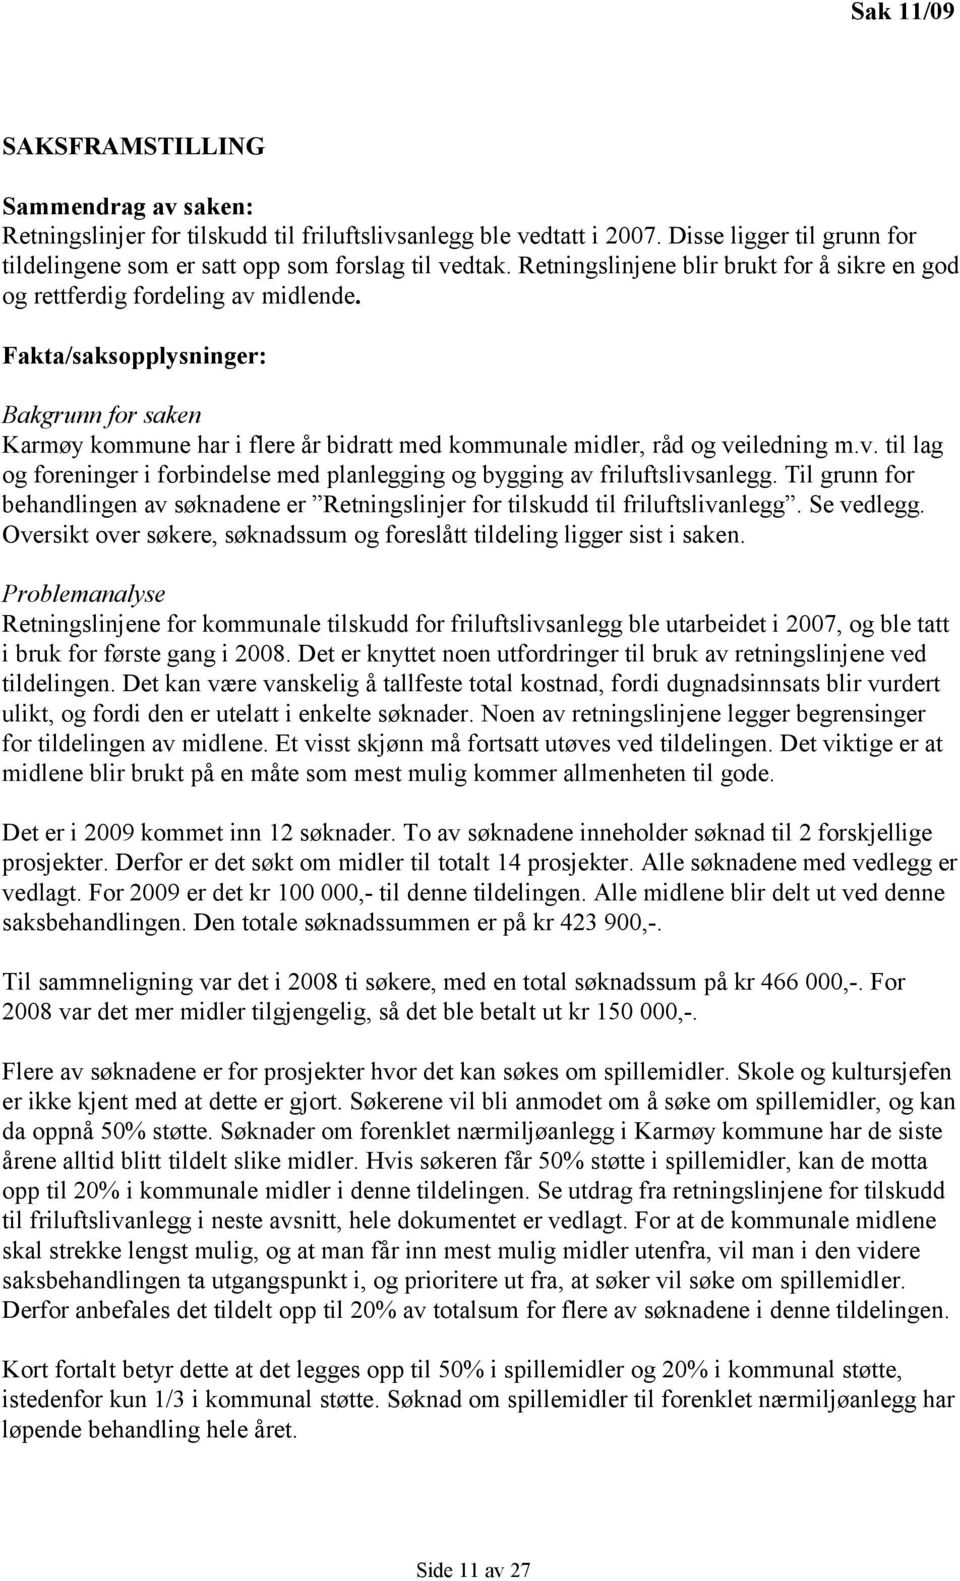 Fakta/saksopplysninger: Bakgrunn for saken Karmøy kommune har i flere år bidratt med kommunale midler, råd og veiledning m.v. til lag og foreninger i forbindelse med planlegging og bygging av friluftslivsanlegg.